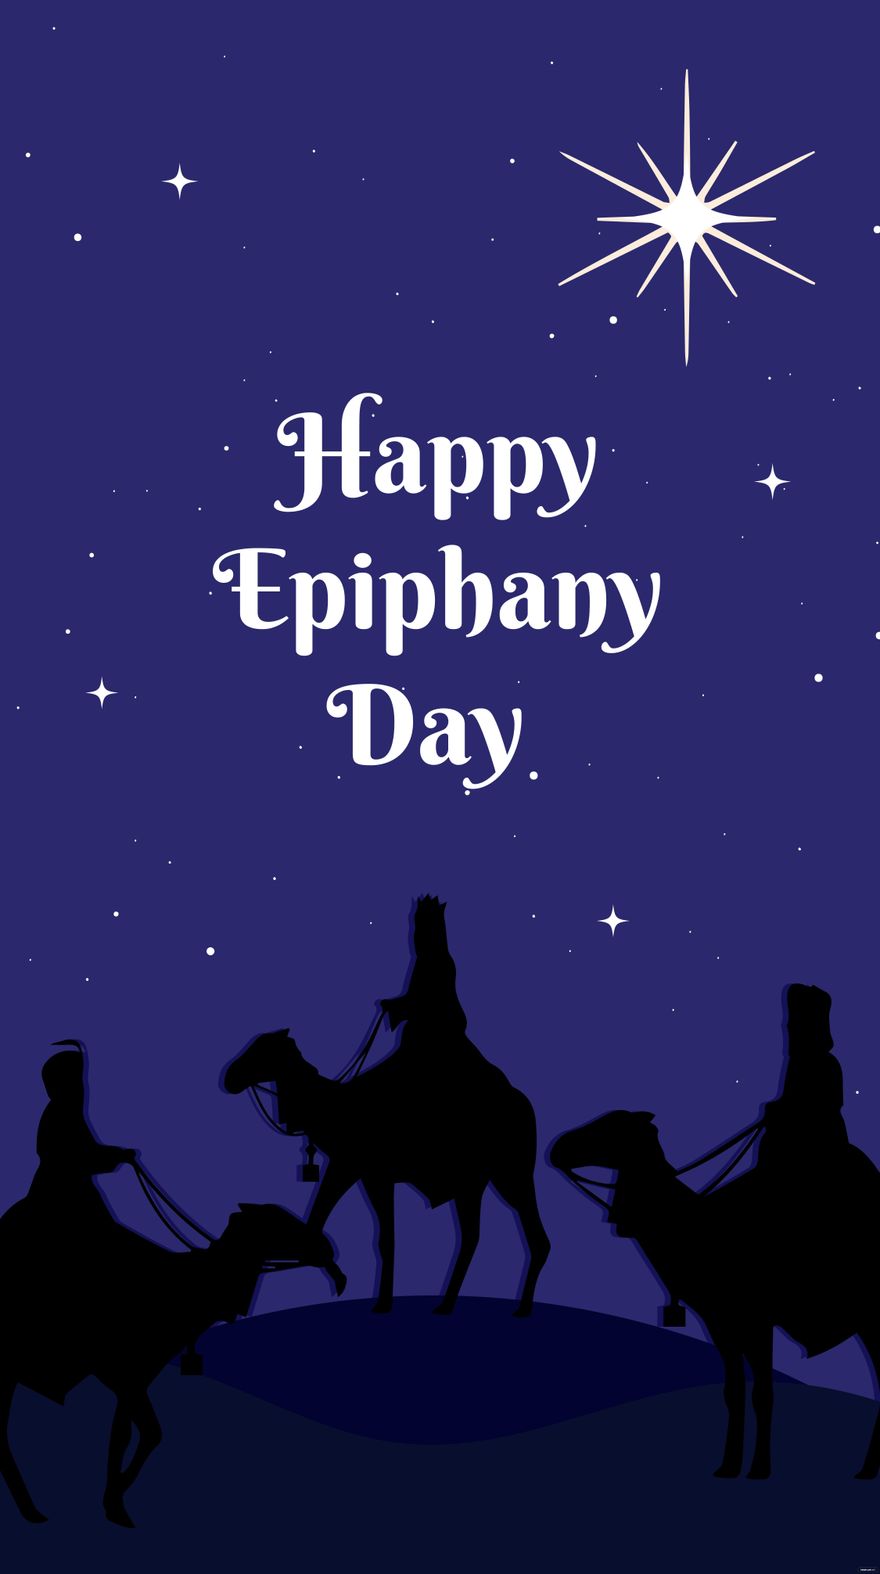 Free Epiphany Day iPhone Background